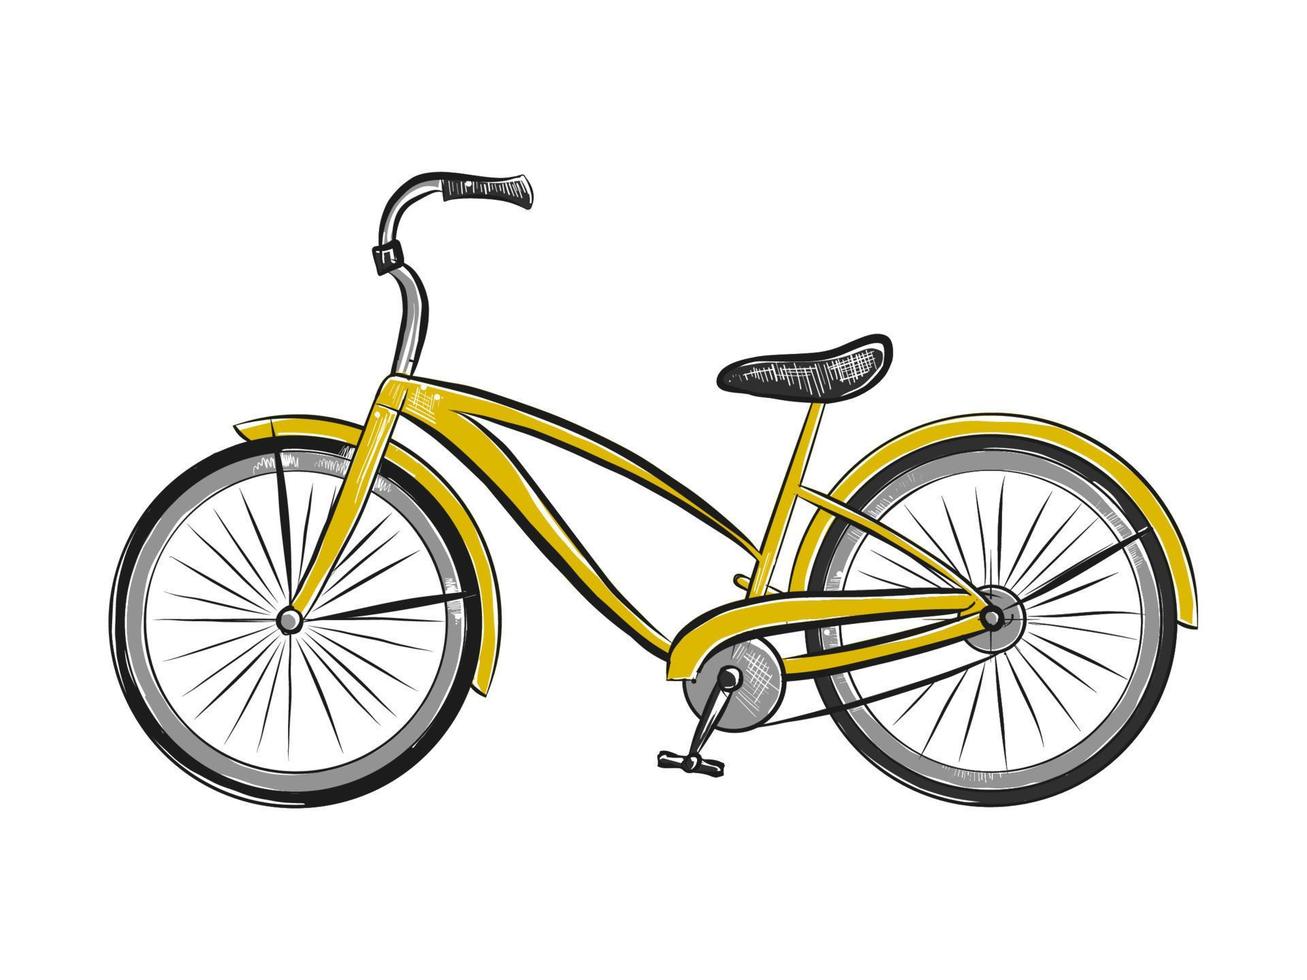 illustration de style gravé de vecteur pour les affiches, la décoration et l'impression. croquis dessiné à la main de vélo jaune isolé sur fond blanc. dessin détaillé de style gravure sur bois vintage.